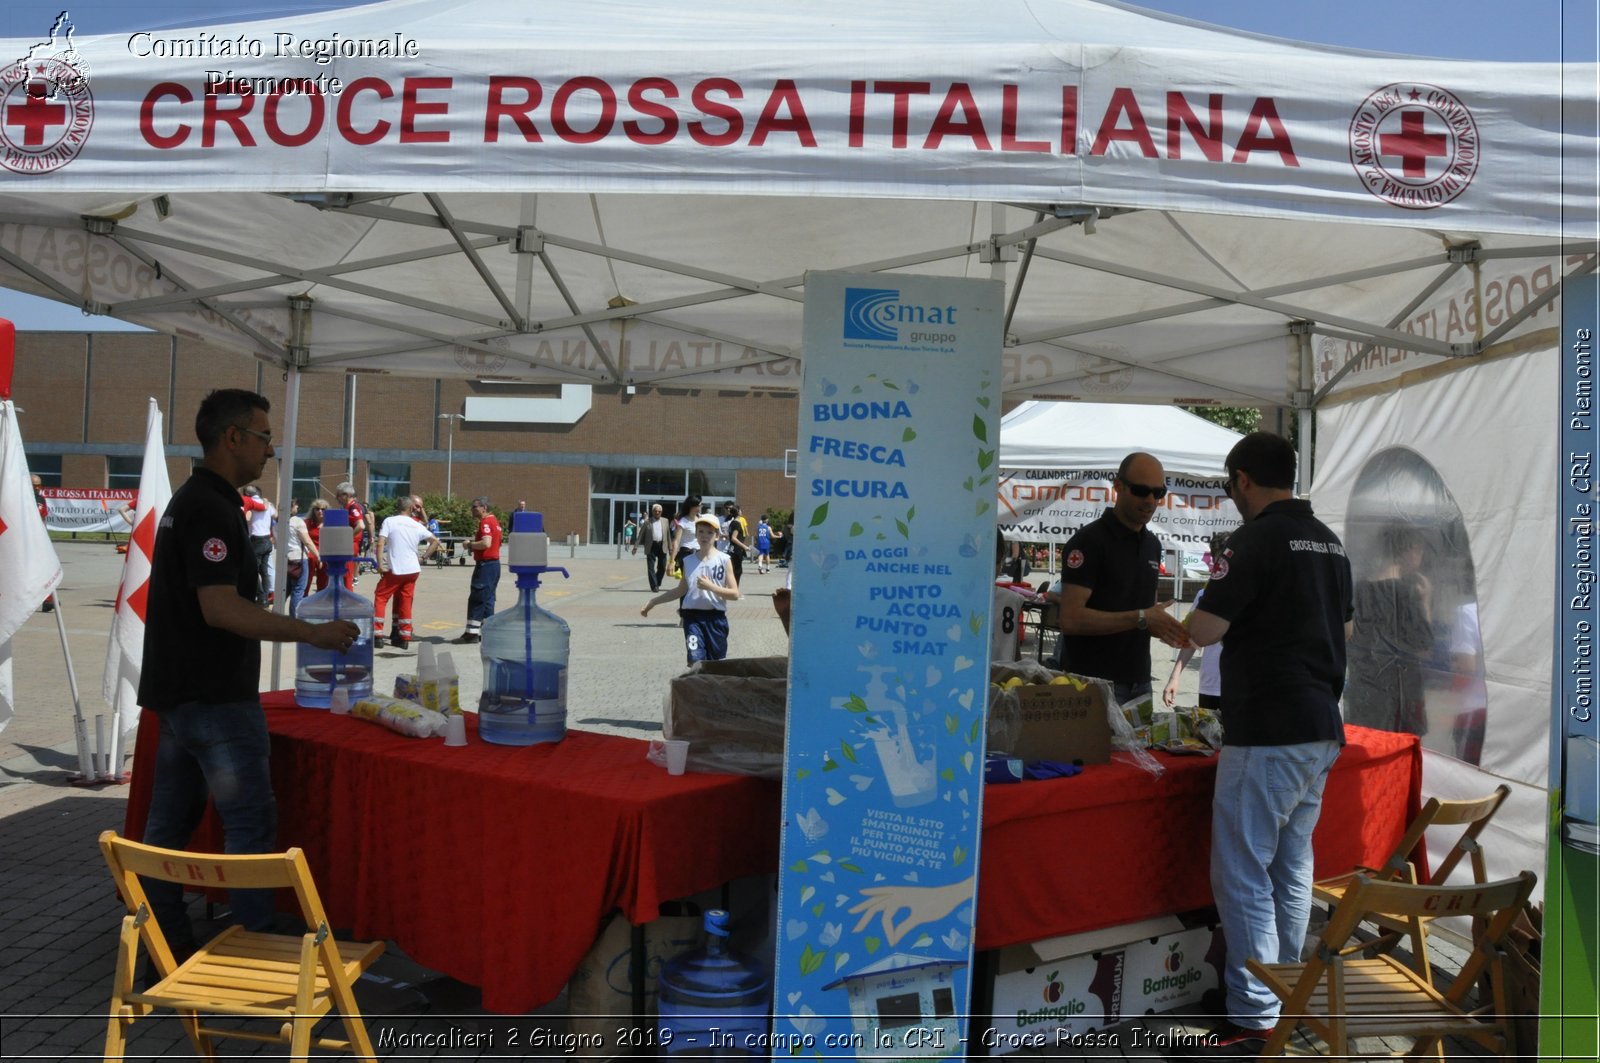 Moncalieri 2 Giugno 2019 - In campo con la CRI - Croce Rossa Italiana - Comitato Regionale del Piemonte